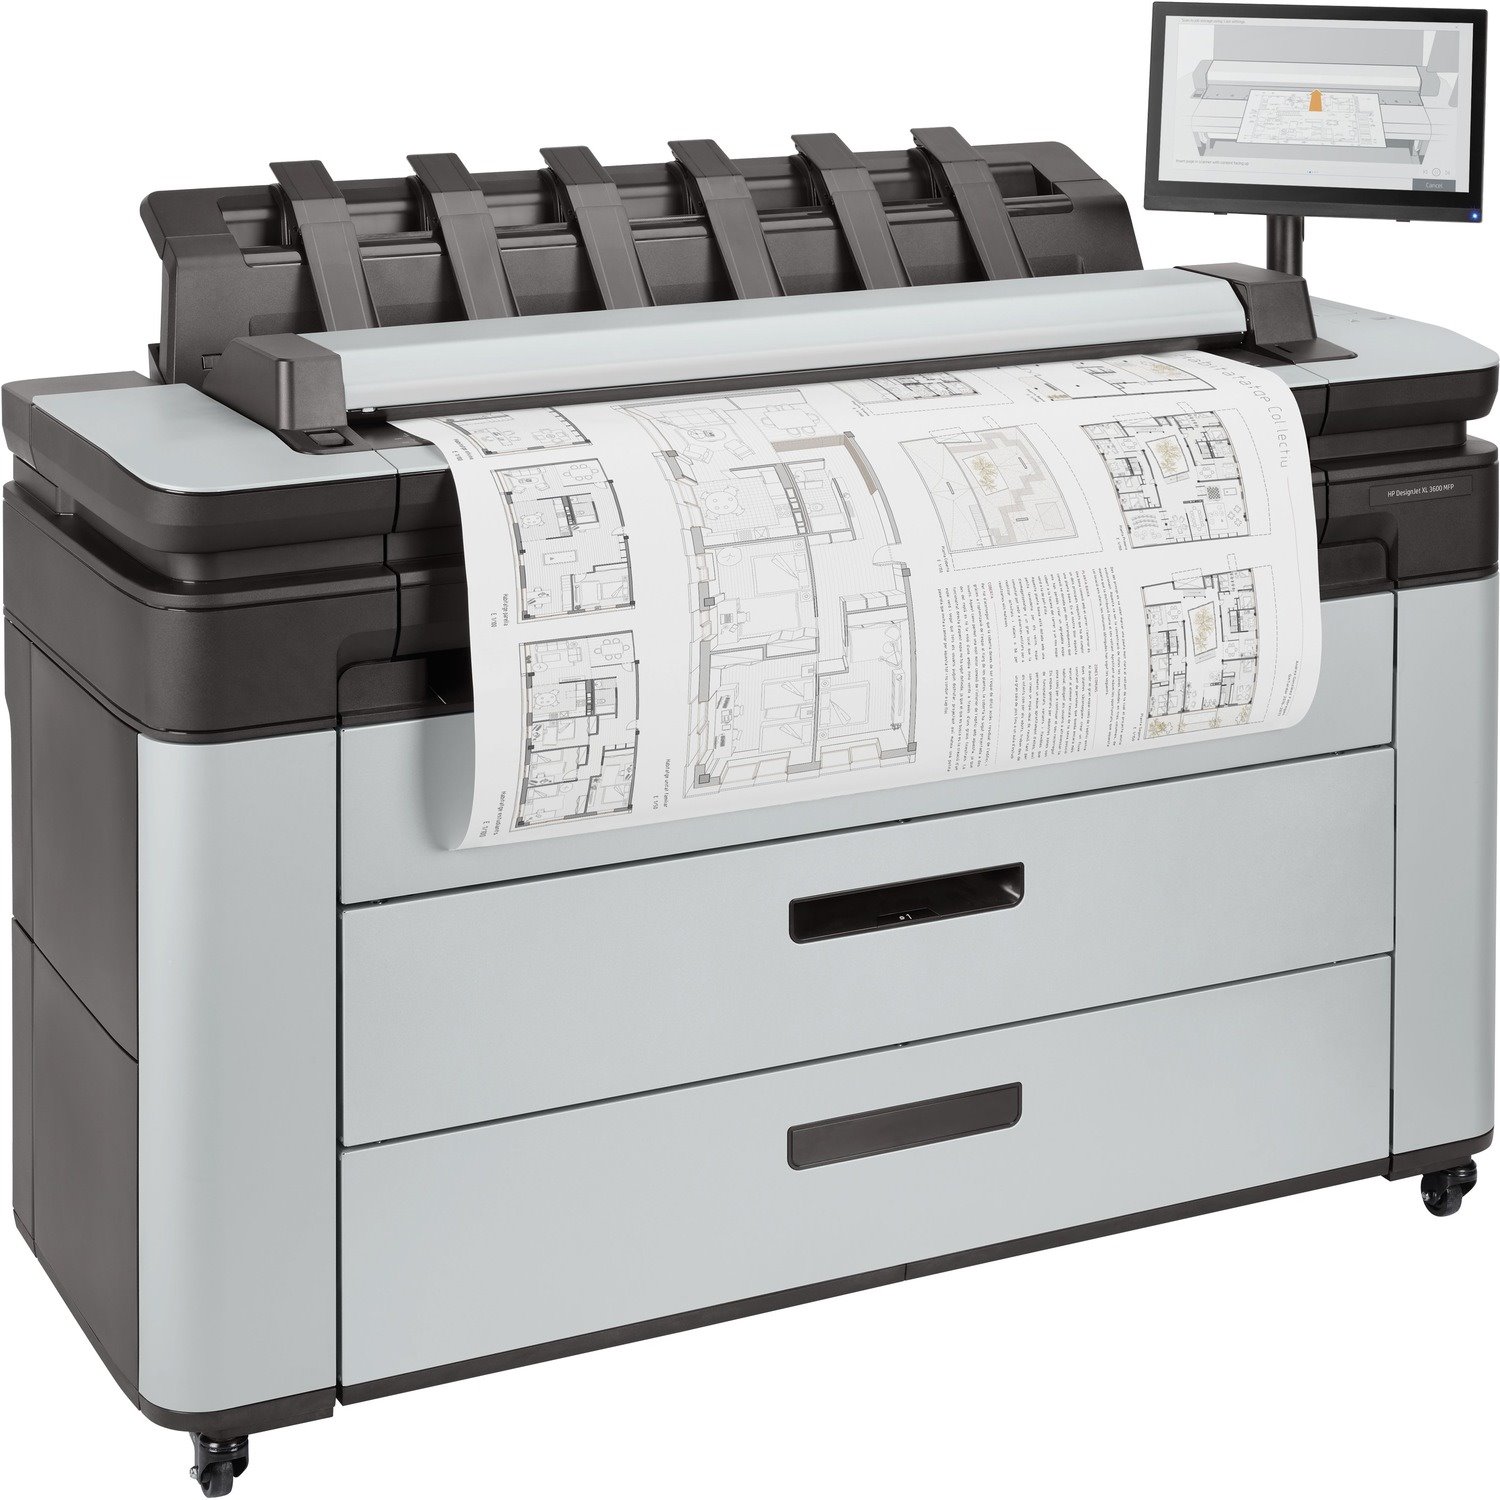 HP DesignJet XL 3600dr Inkjet Large Format Printer - Includes Printer, Scanner, Copier - 914.40 mm (36") Print Width - Colour